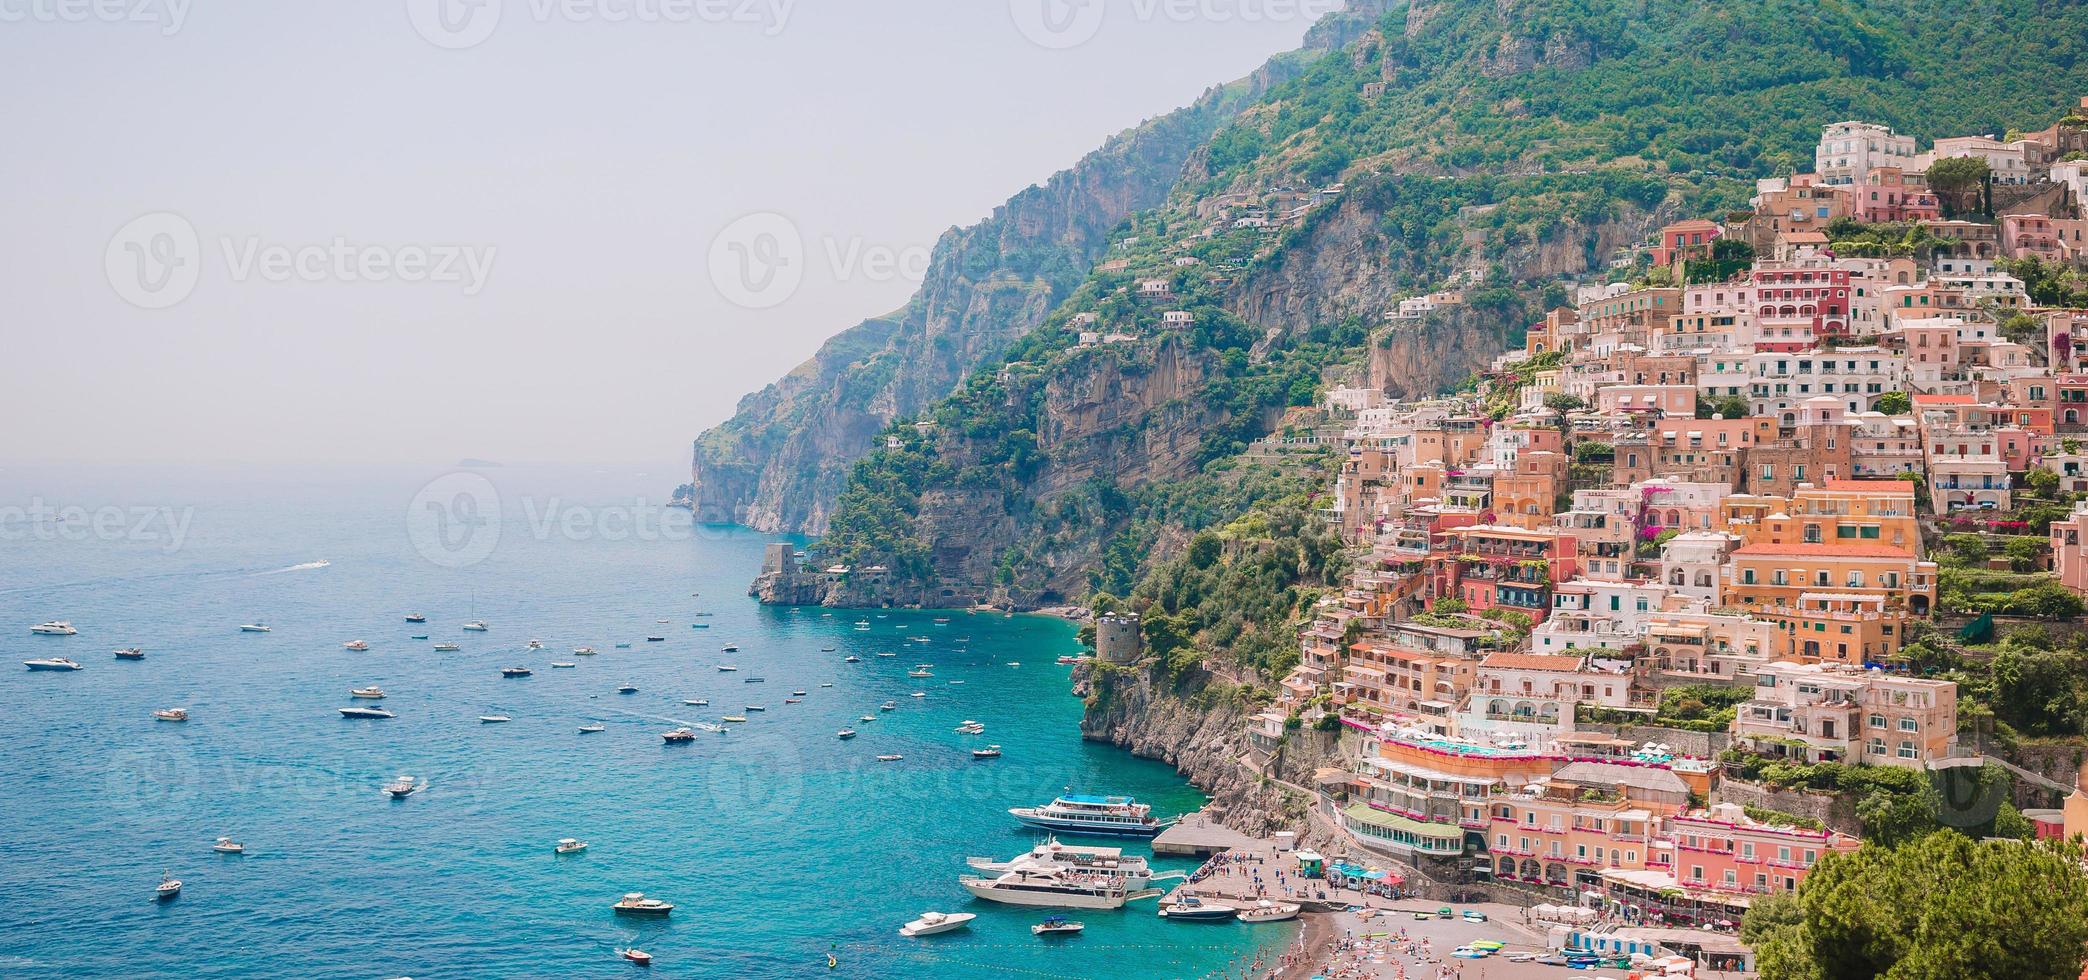 hermosos pueblos costeros de italia - pintoresco positano en la costa de amalfi foto